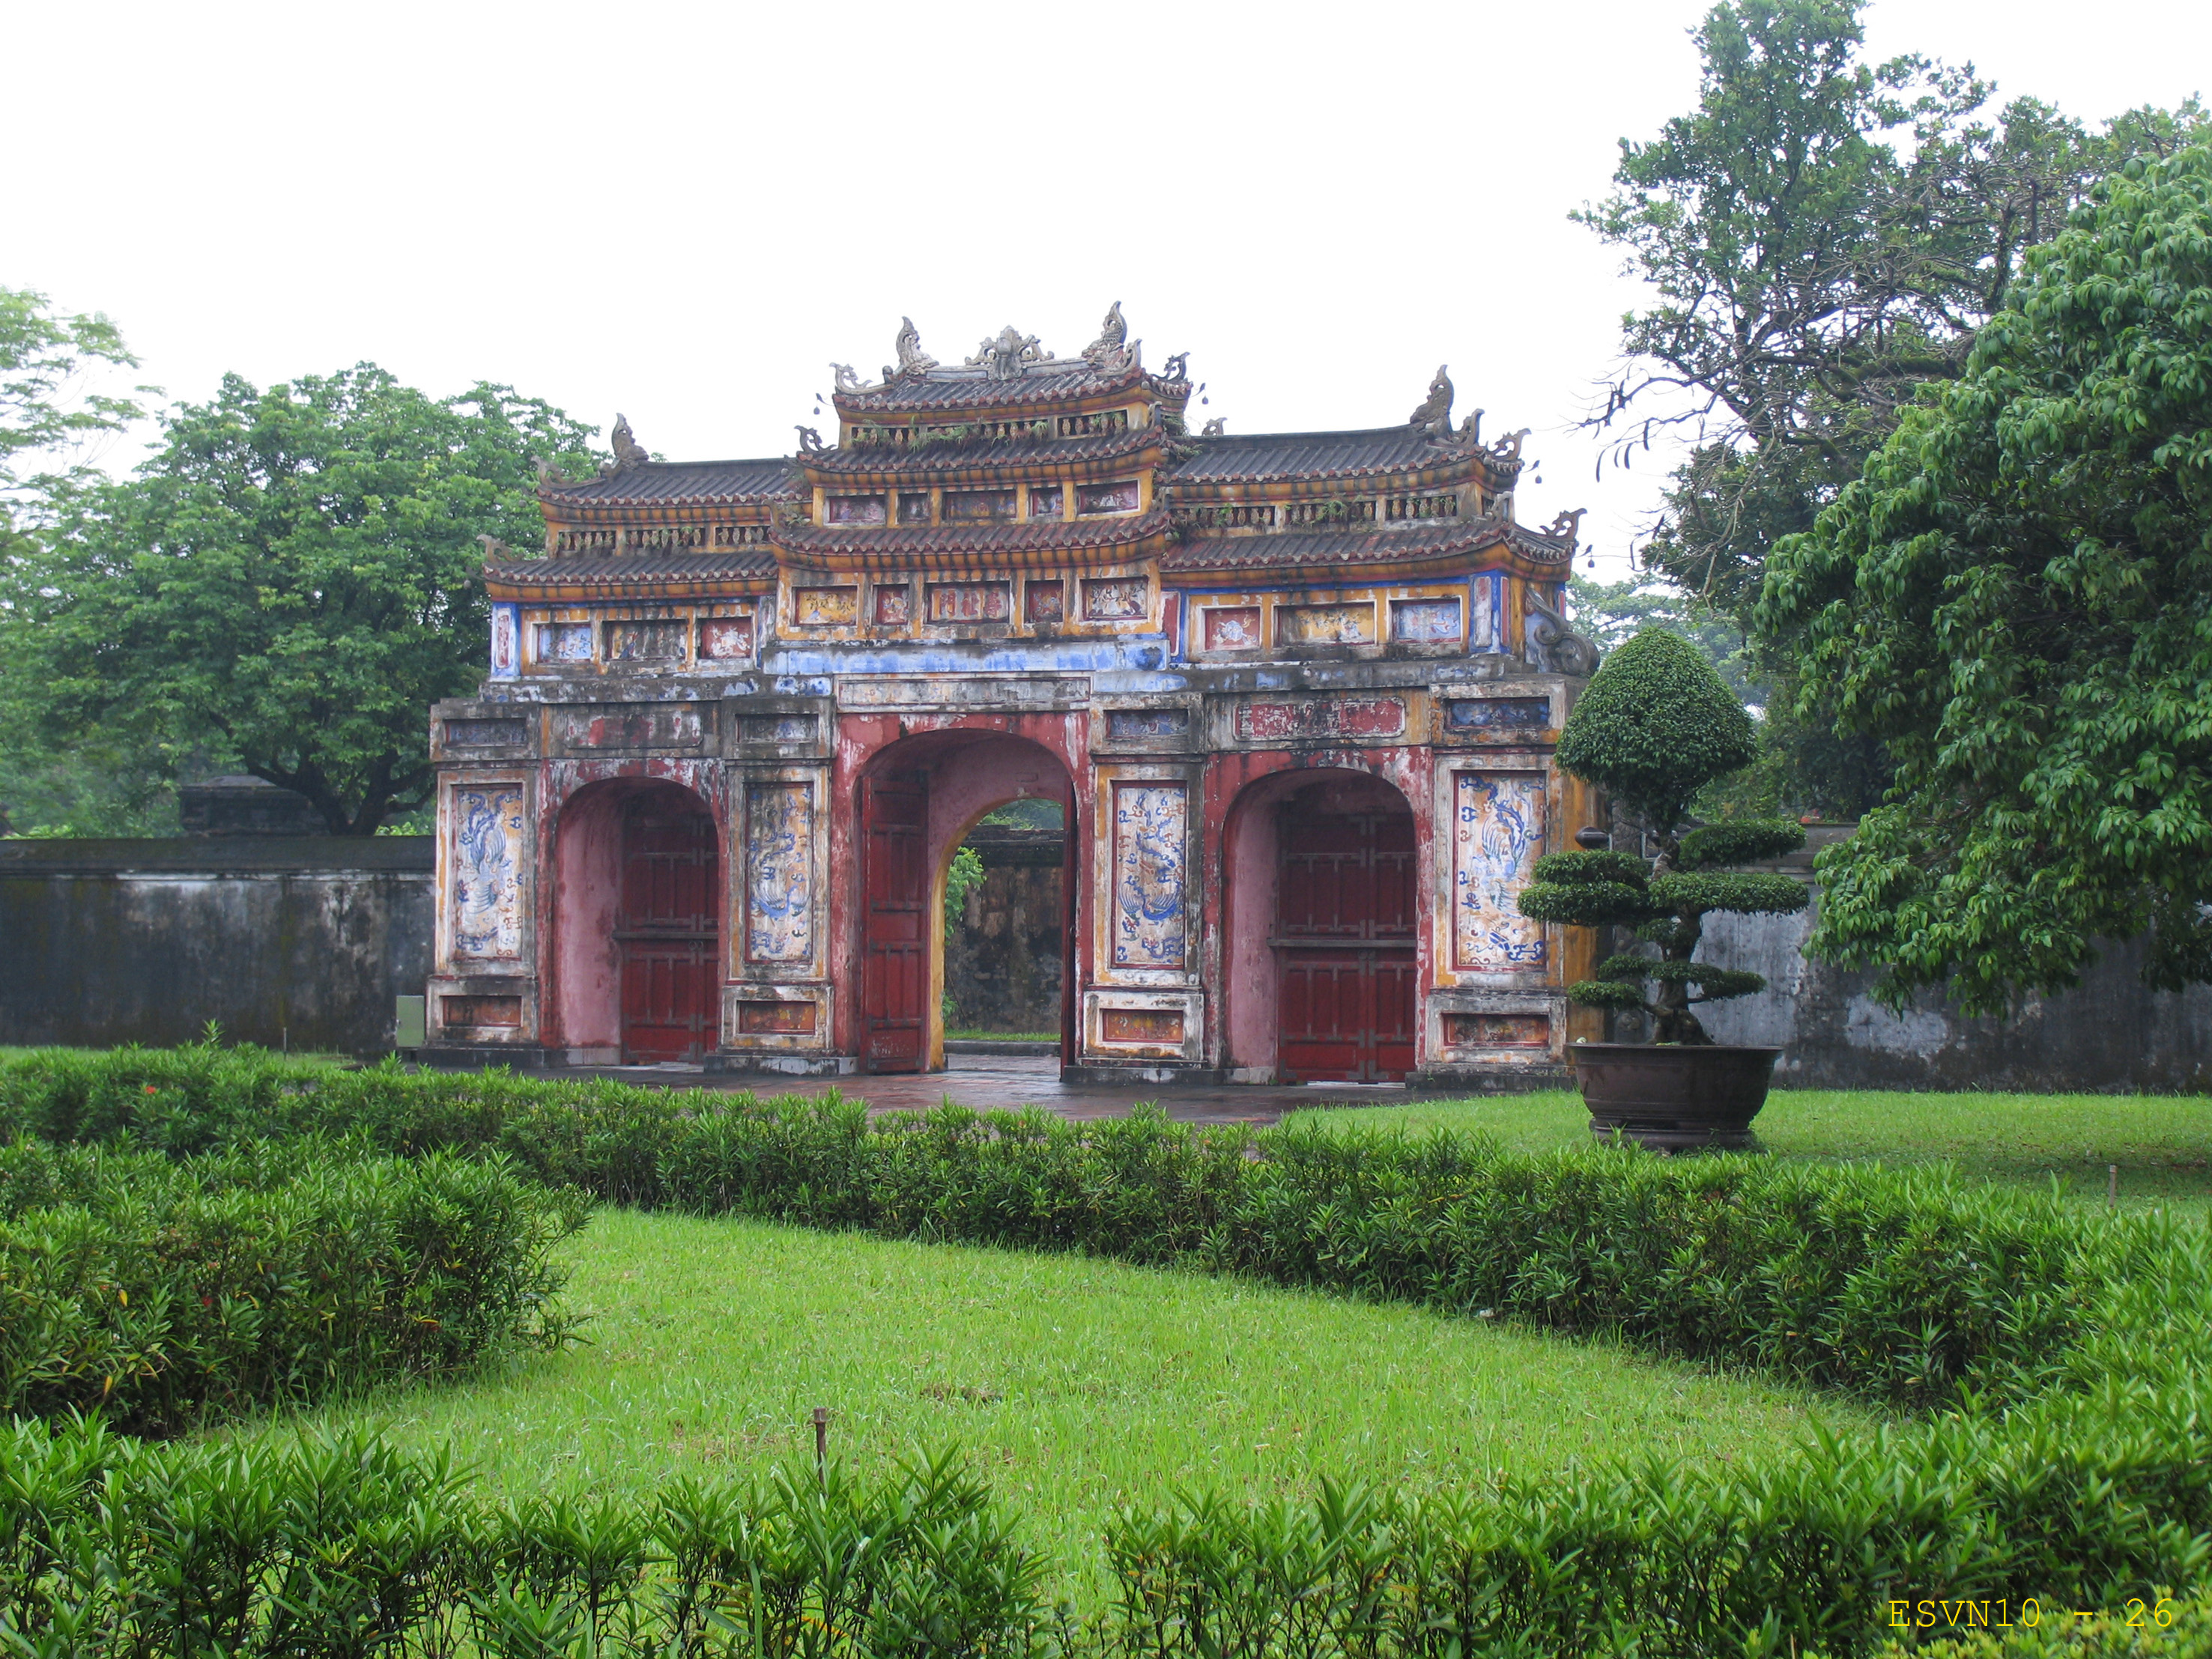  La Porta settentrionale An Hoa, vista dal giardino interno 